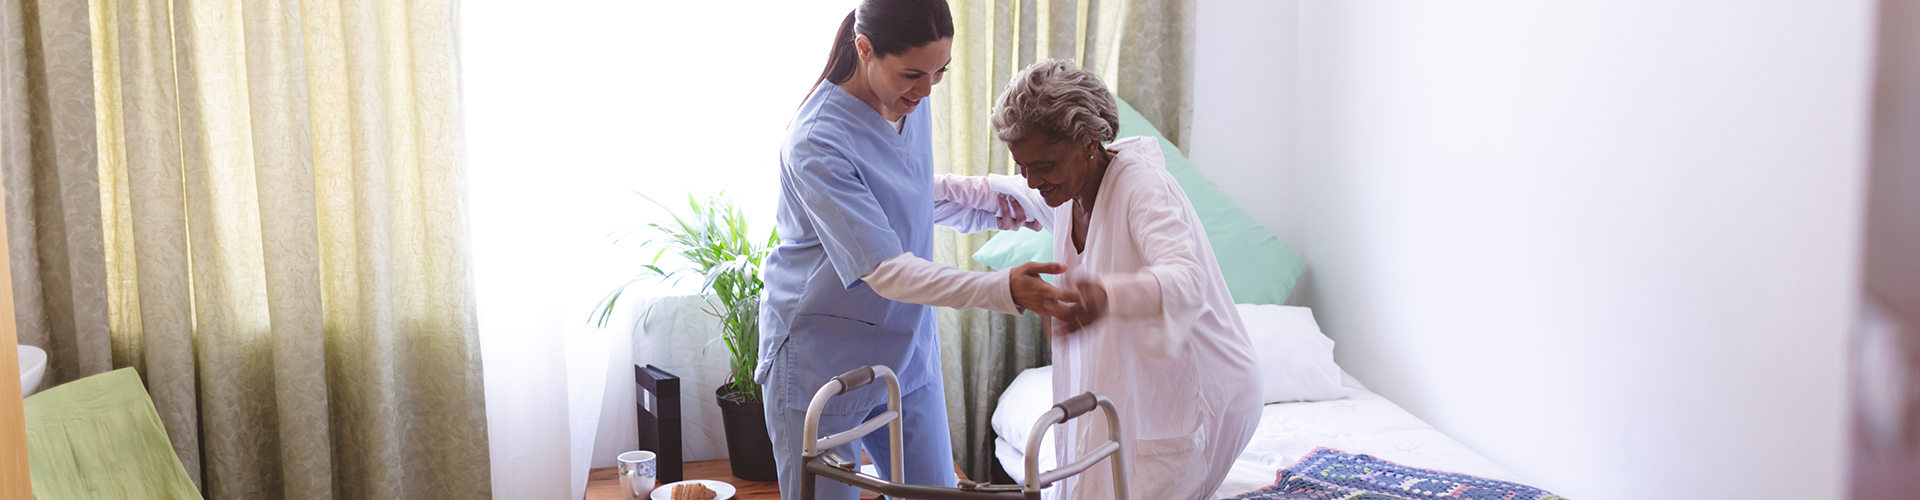 caretaker helps elder woman stand up